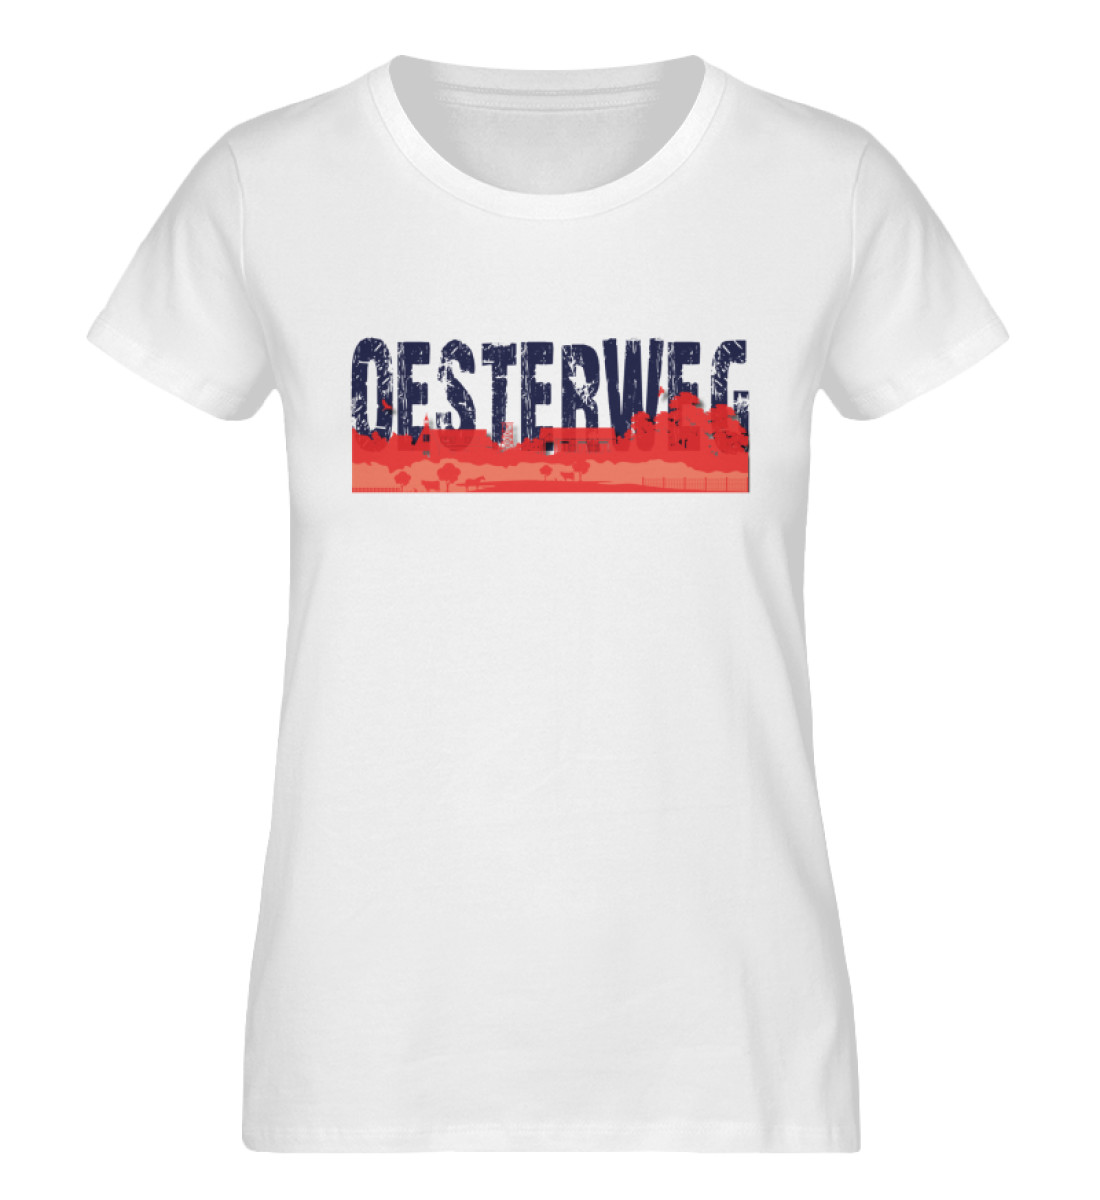 Oesterweg - Damen Premium Organic Shirt-3